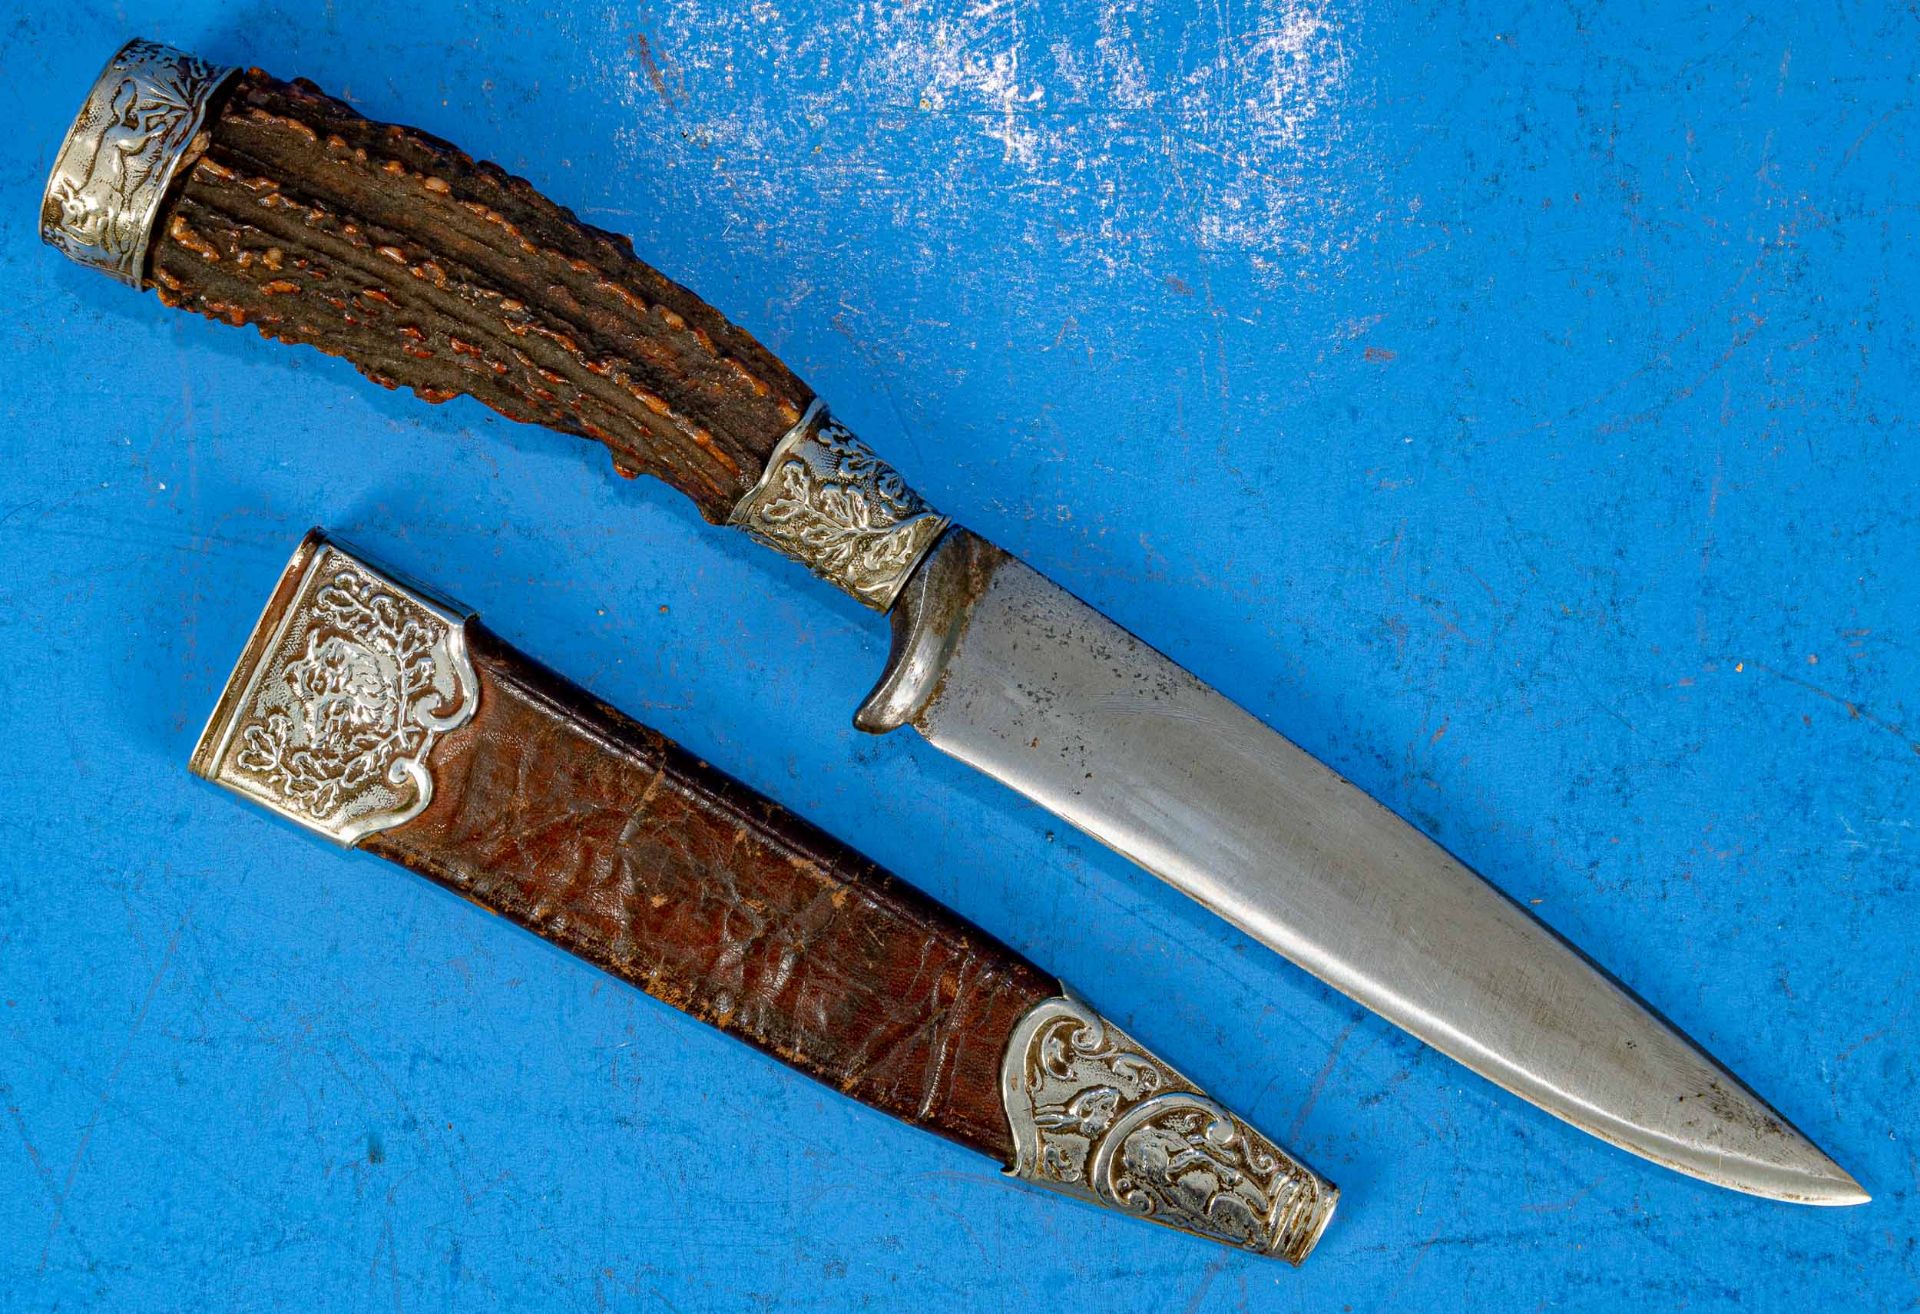 3tlg. Konvolut "Jagdliches", bestehend aus 2 kleinen Messern, Hirschhorngriffe in metallbeschlagene - Image 6 of 9